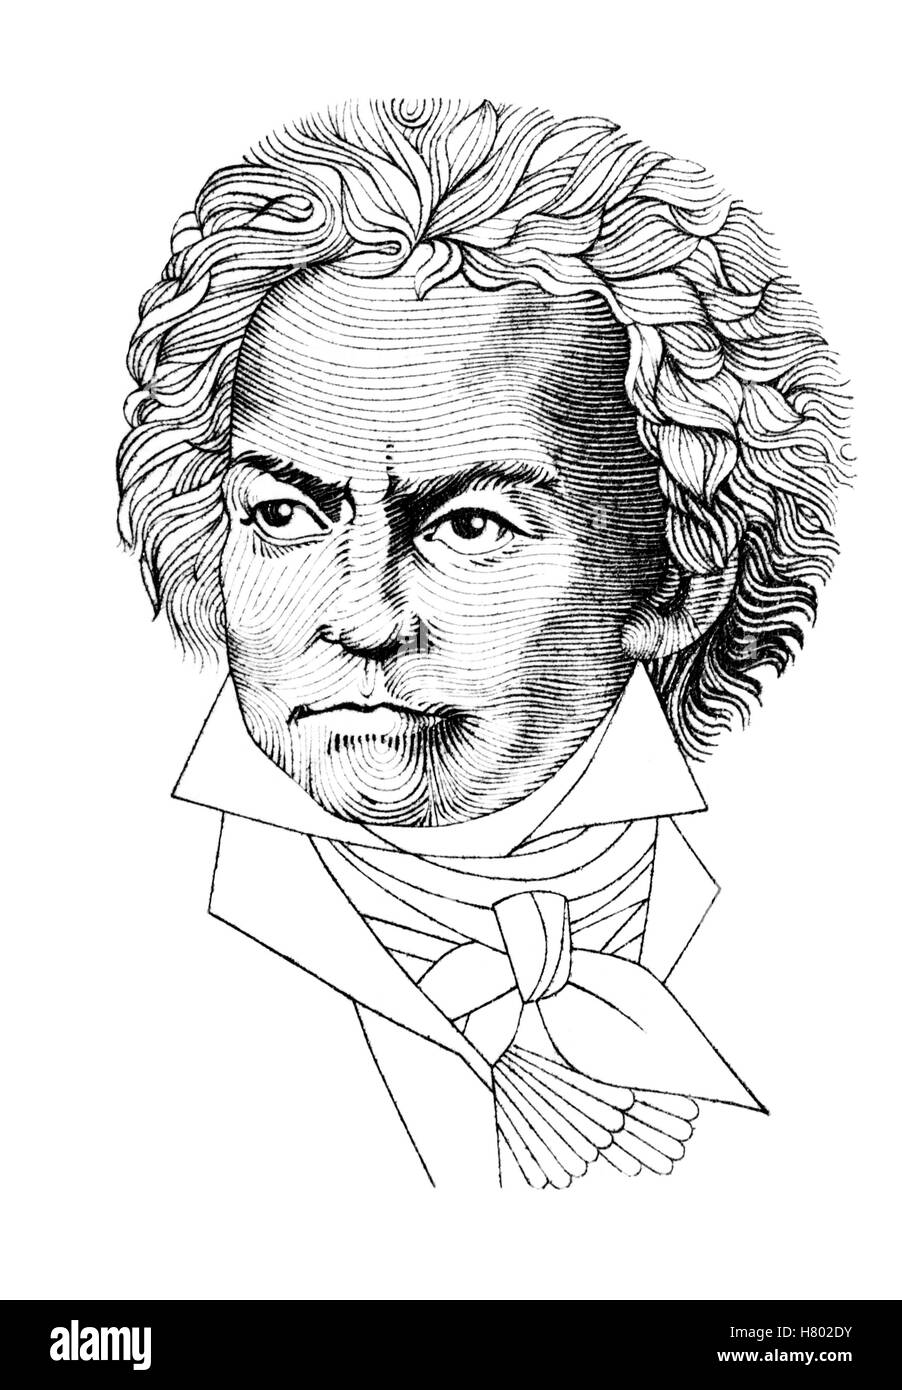 Ritratto di Ludwig van Beethoven (compositore tedesco; 1770-1827) tagliato fuori dal tedesco francobollo. Foto Stock